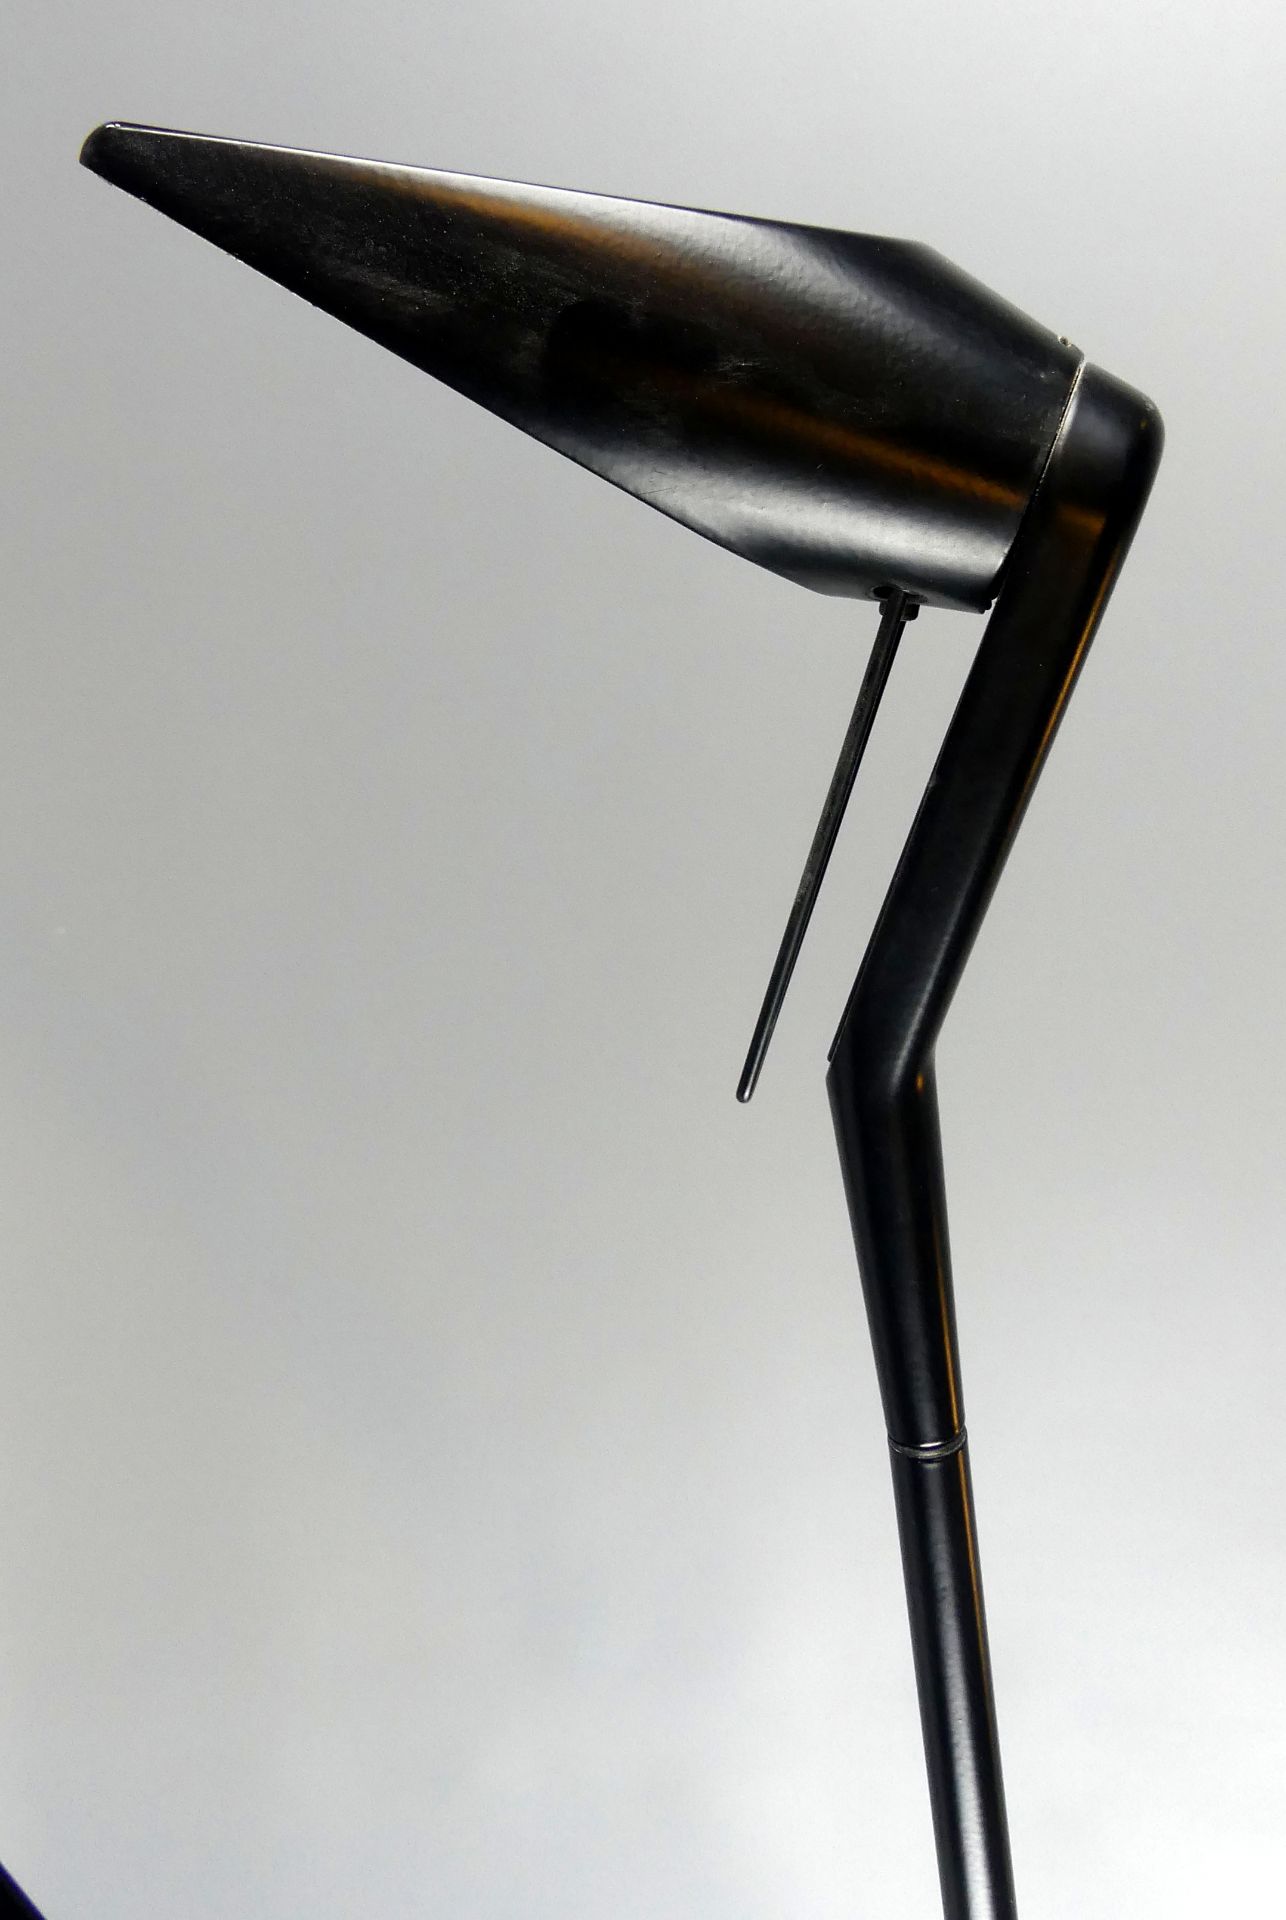 Designer Tischlampe, Lumina, Modell Celig, von Walter A. Monici, - Bild 2 aus 4